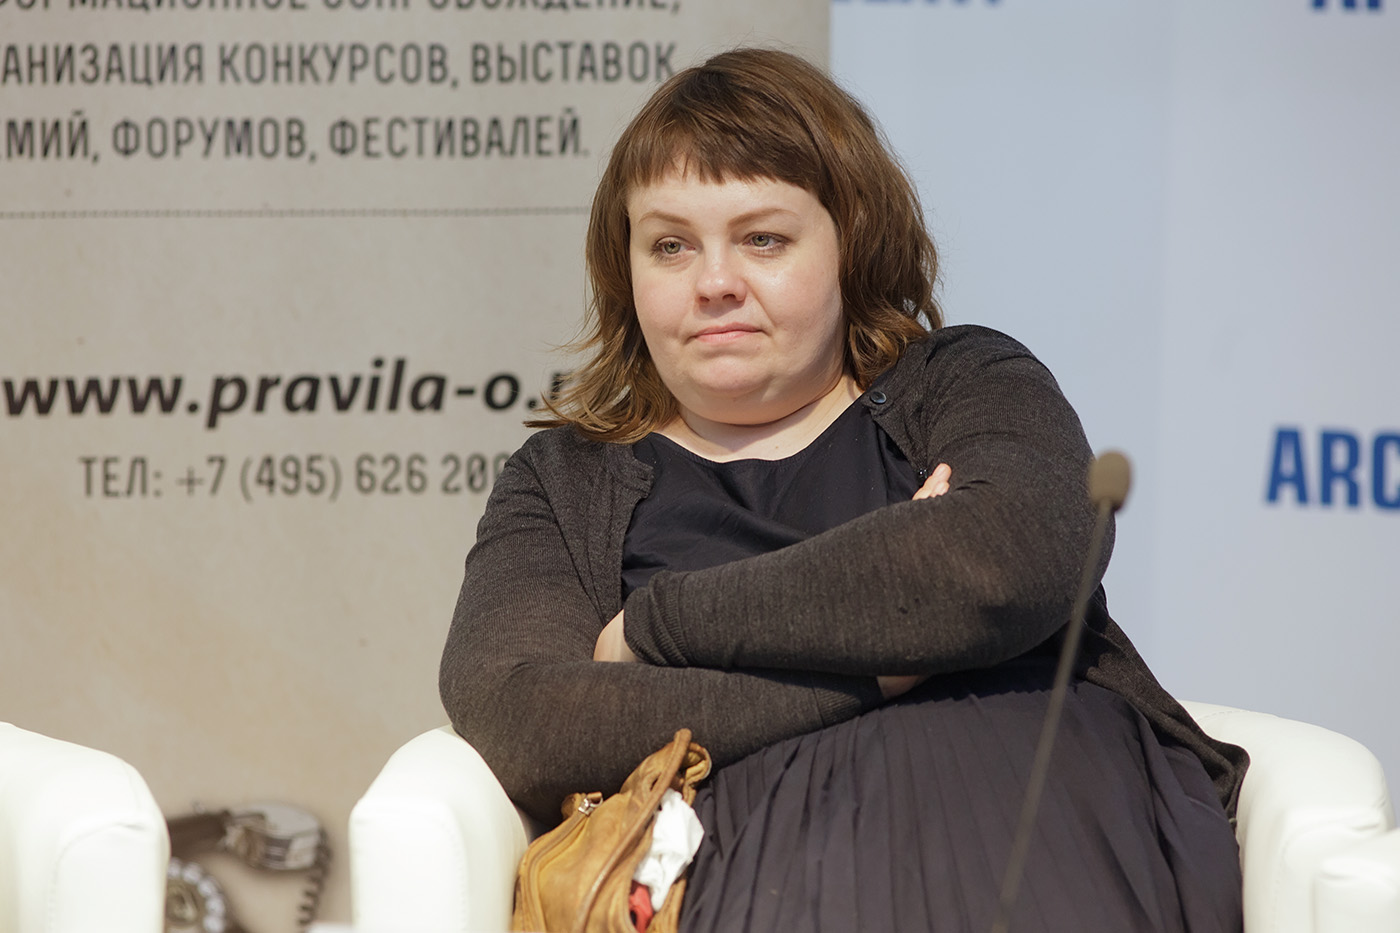 Анна Нистратова, идеолог стрит-арта